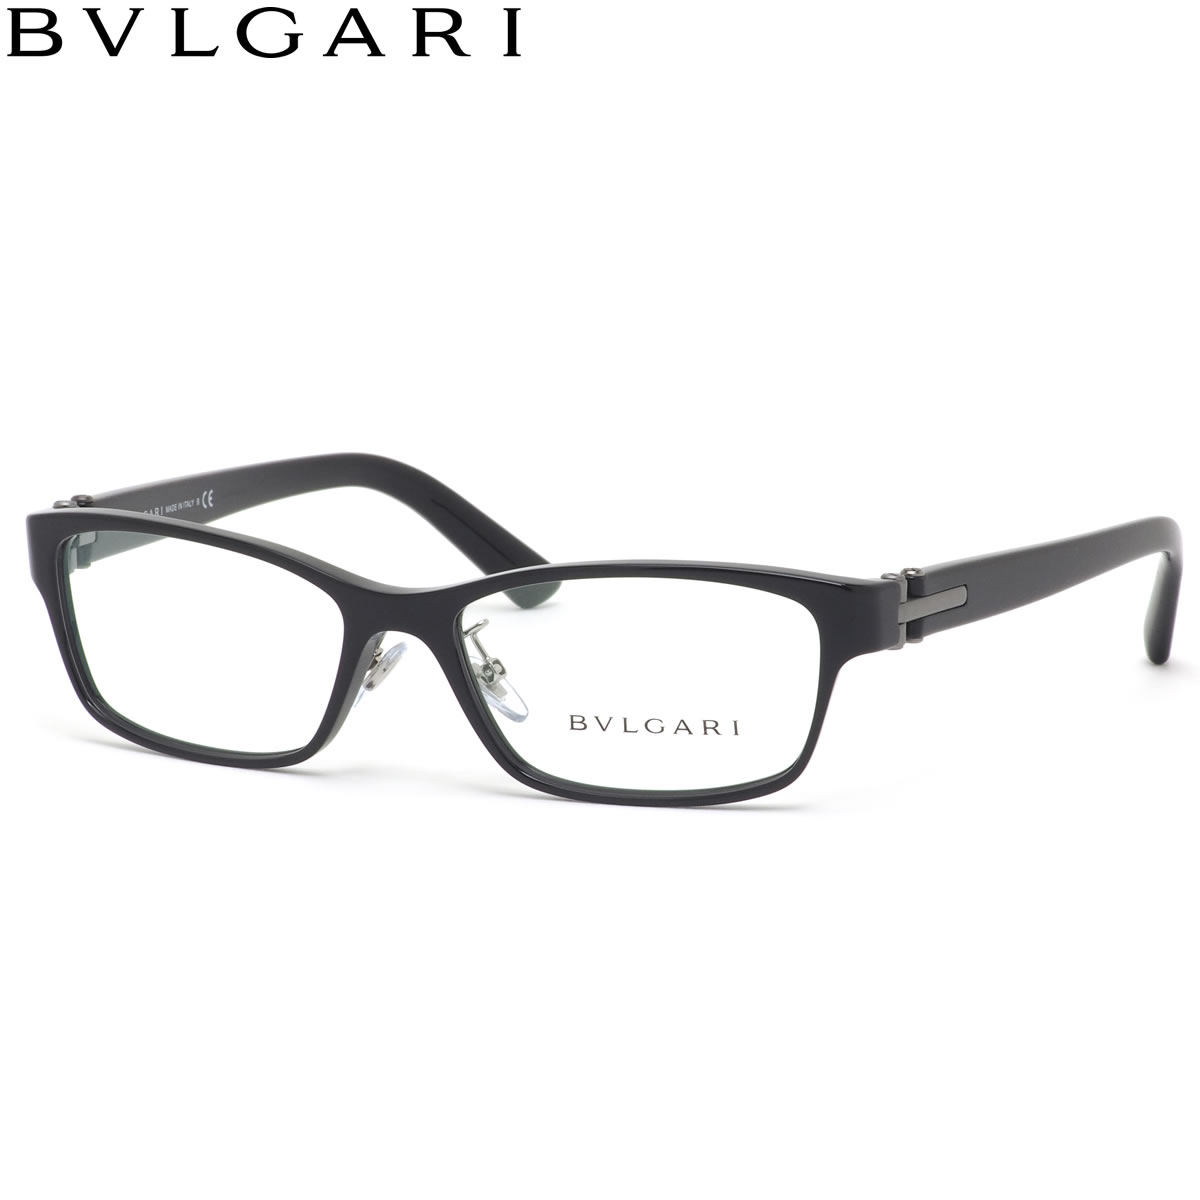 ブルガリ メガネ レディース メンズ 黒縁 黒ぶち ITALY IN MADE イタリア製 ディアゴノ DIAGONO BVLGARI 54 501 BV3043D 眼鏡